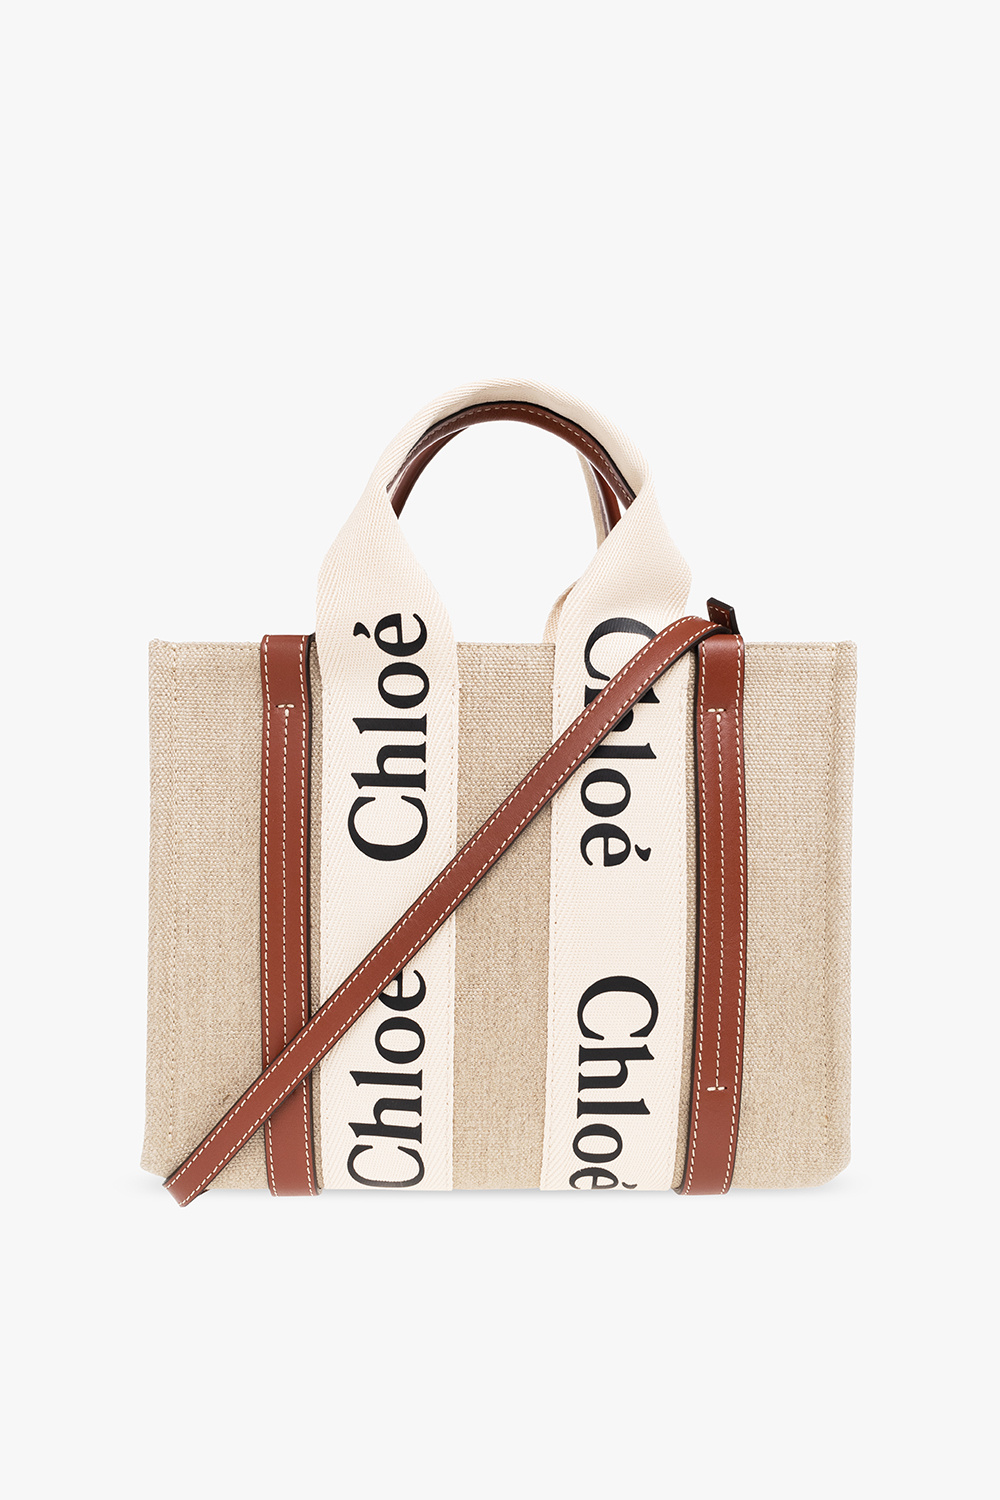 Chloé Chloé C Mini Bag, Chloé US